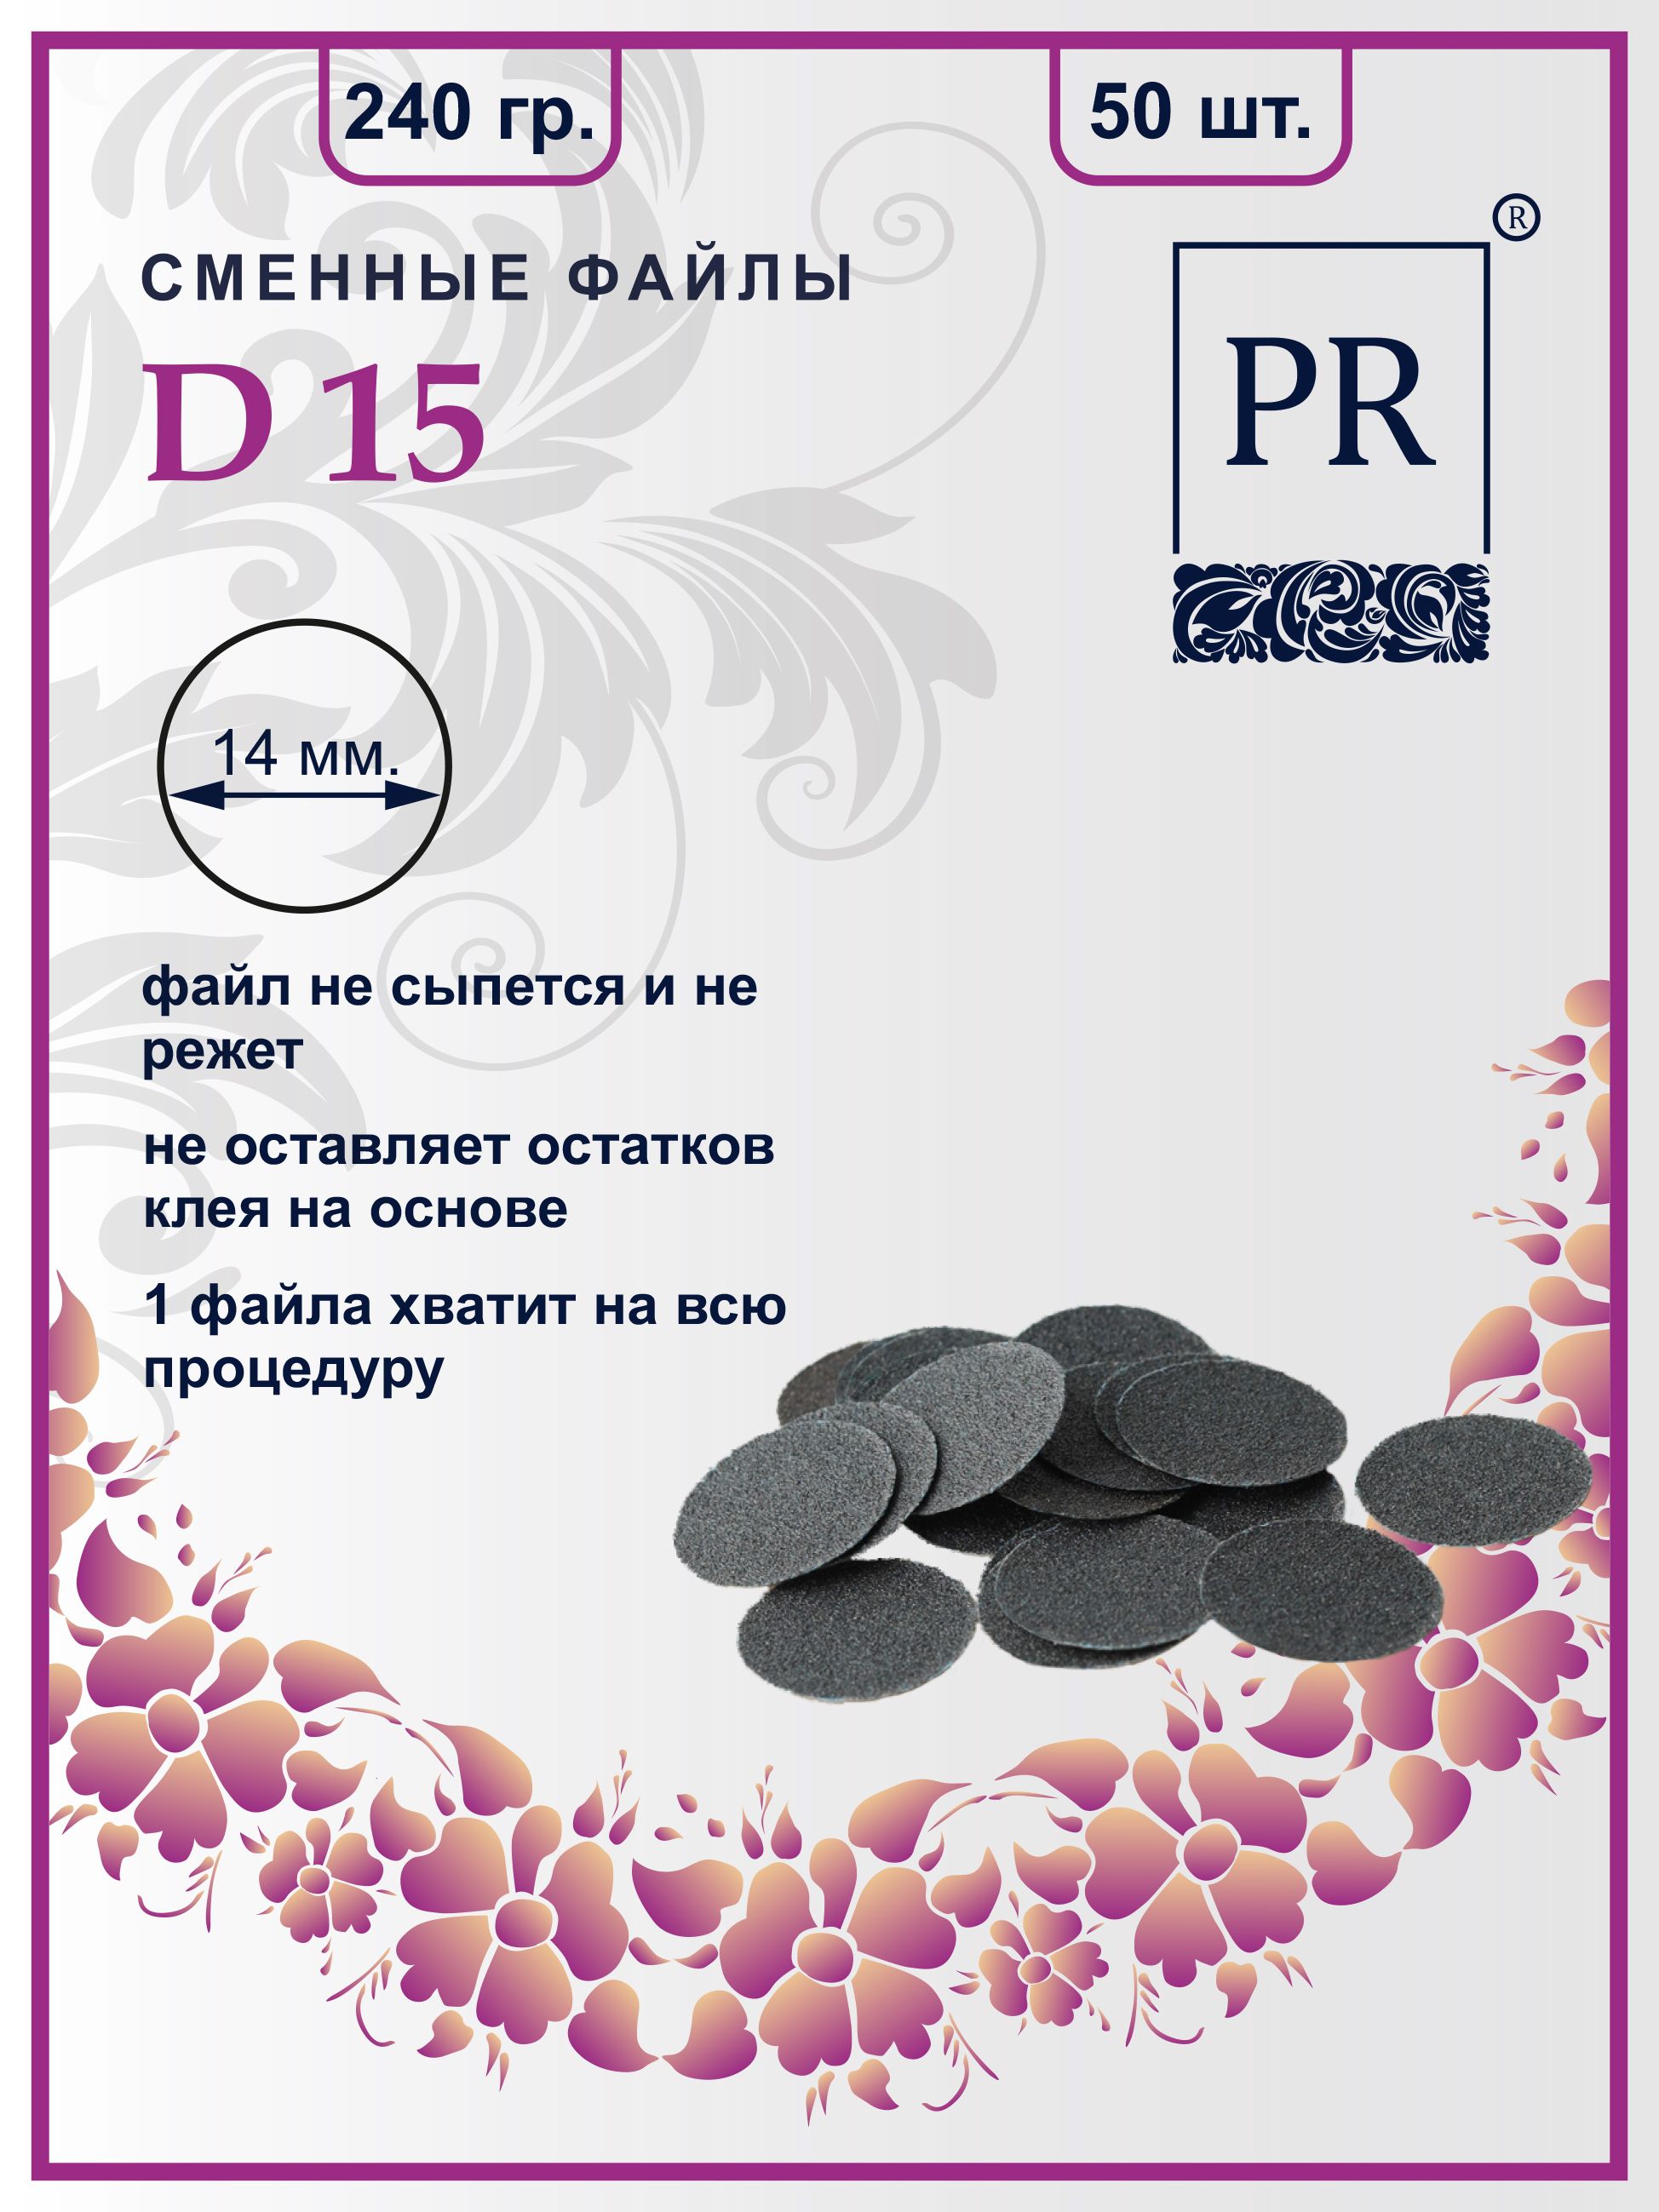 Сменные файлы Pilochki Russia диски для педикюра для диска S 240 грит 50 штук сменные файлы smart одноразовые для пилки основы лодочка м 13 см 100 грит черные 50 шт